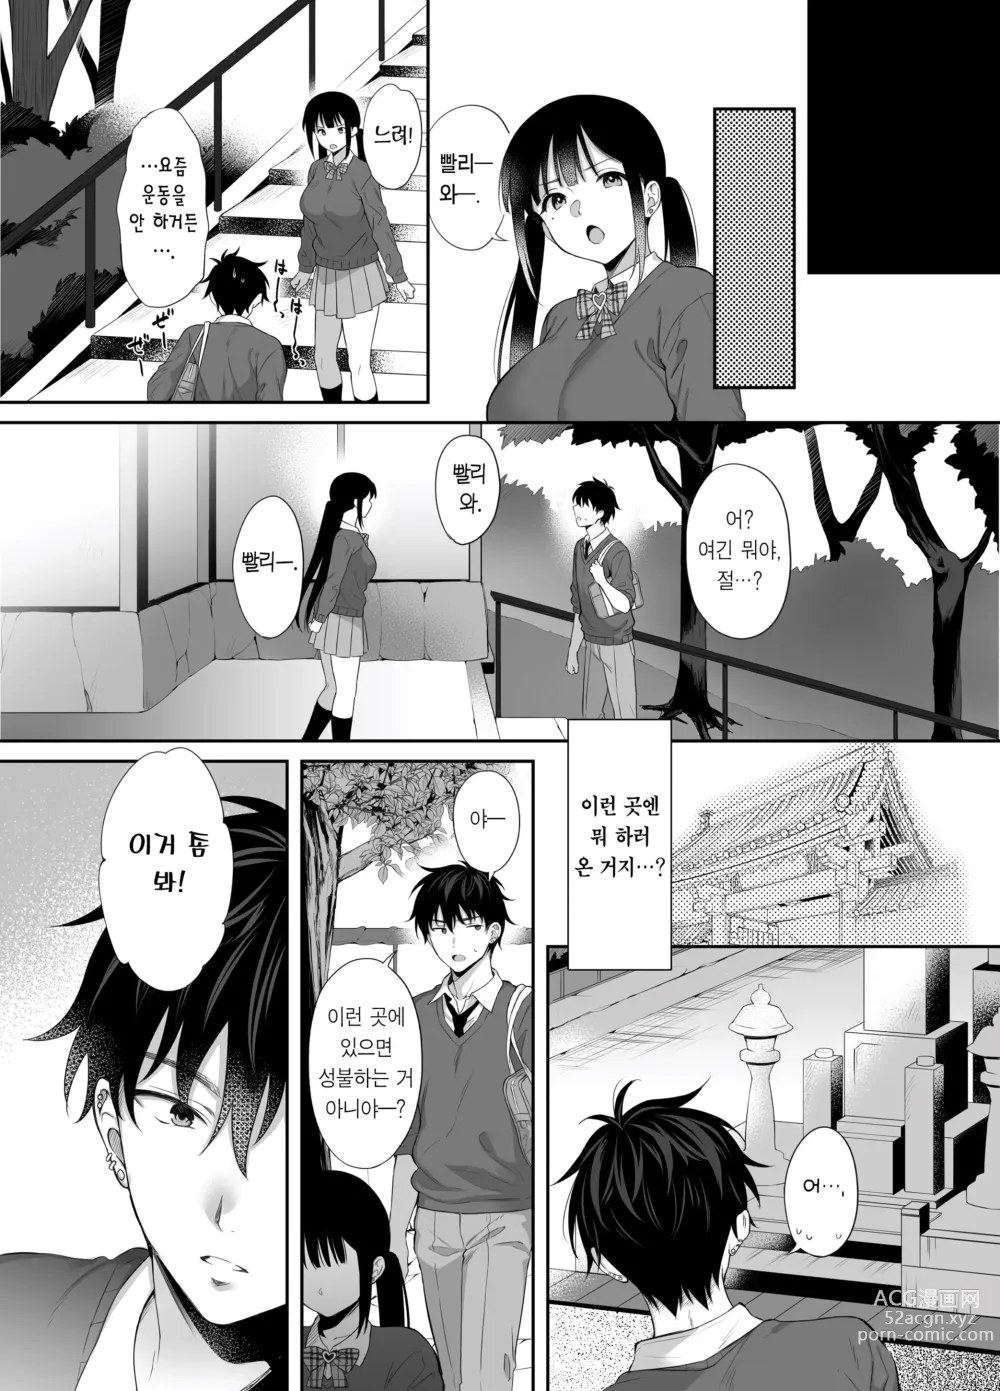 Page 48 of doujinshi 폐허에서 지뢰녀랑 밤새 질내사정 섹스한 이야기 2